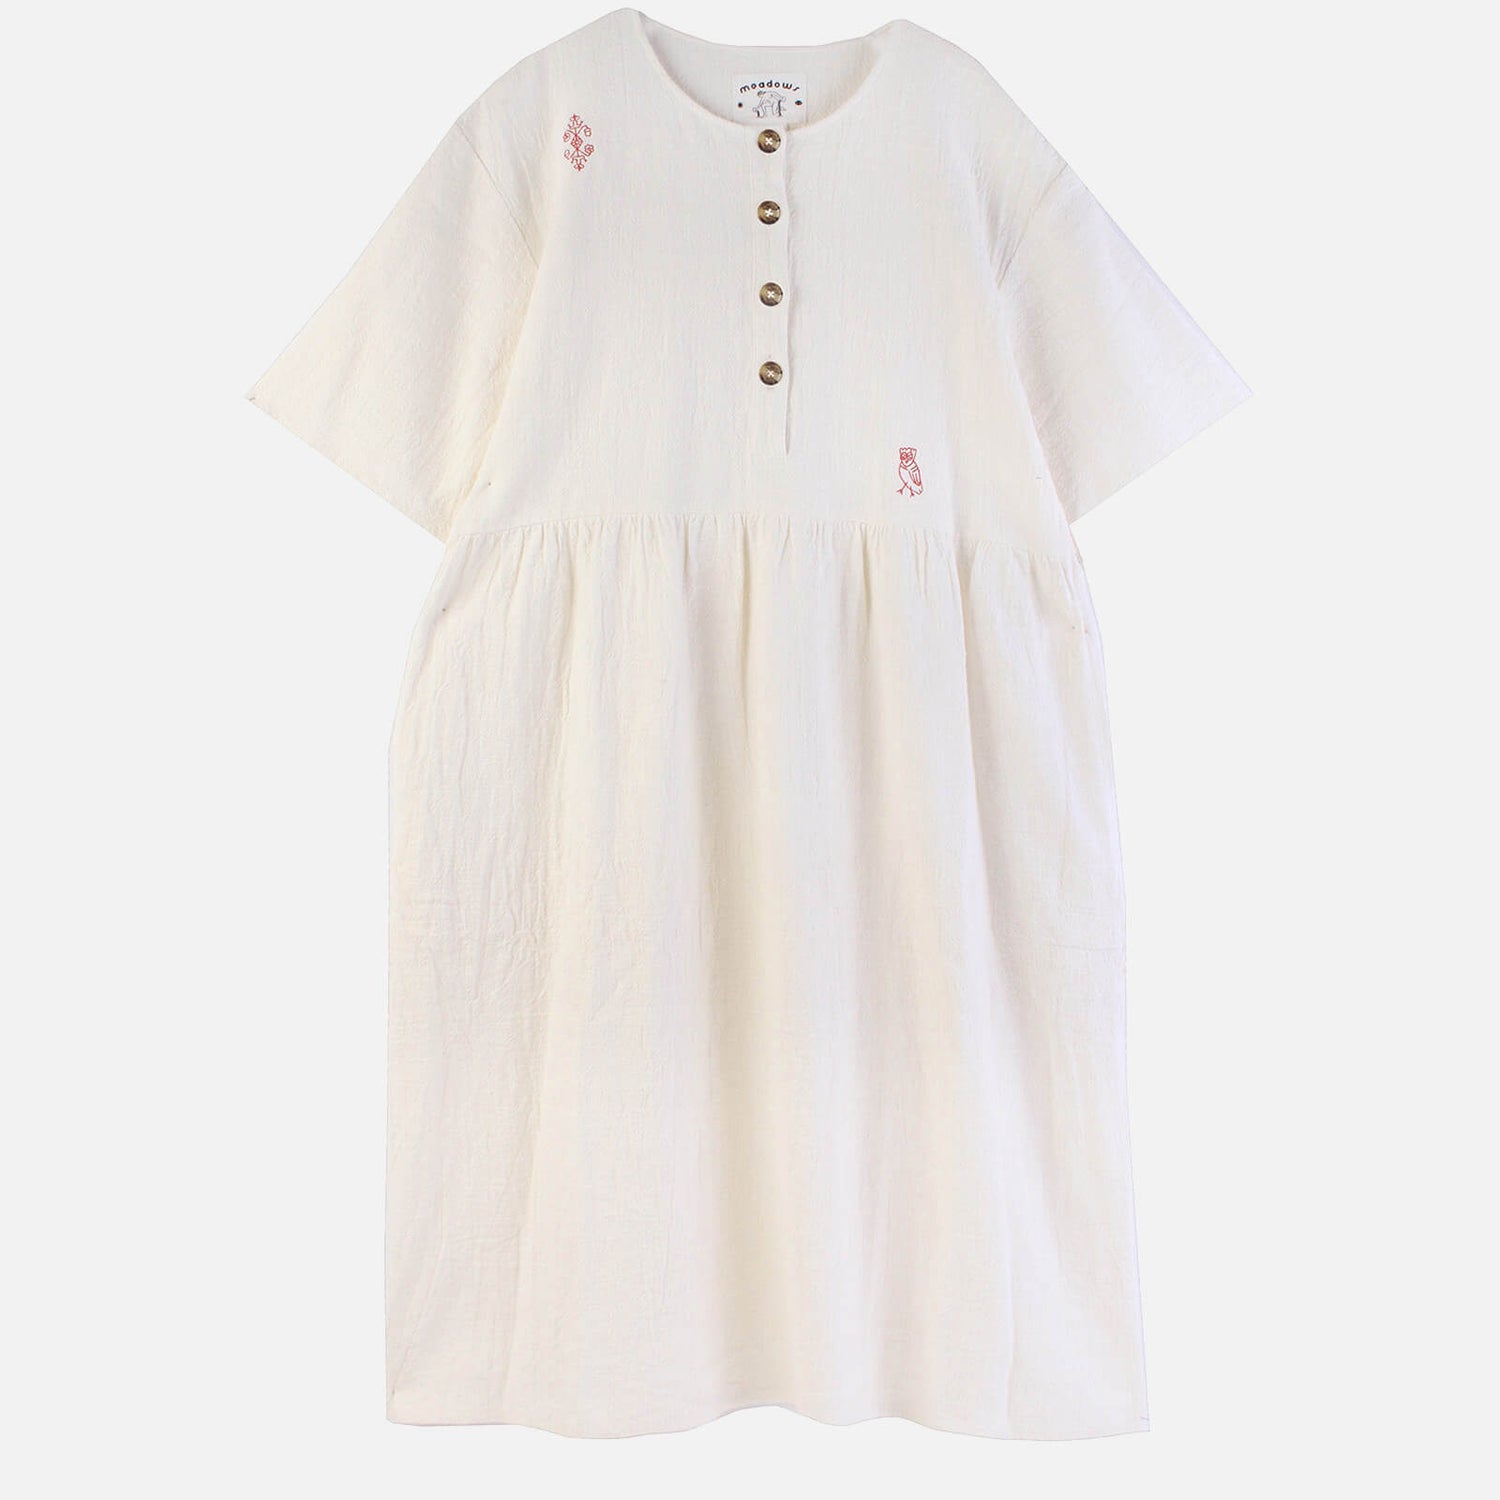 Meadows Women's Tamarind Dress - White - UK 8